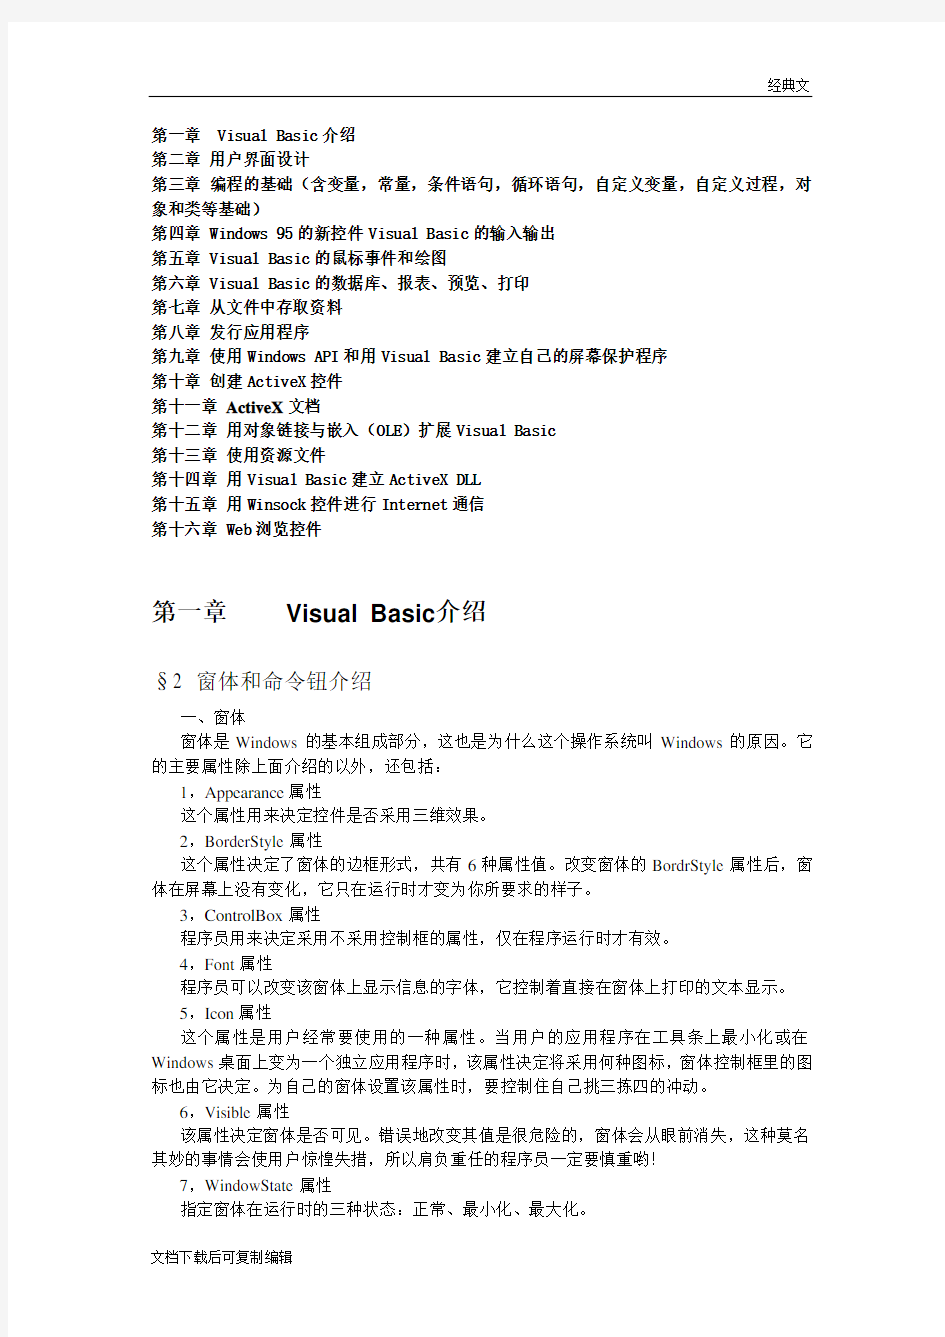 VB6.0详细讲义(VB6实用教程-VB6从入门到精通)